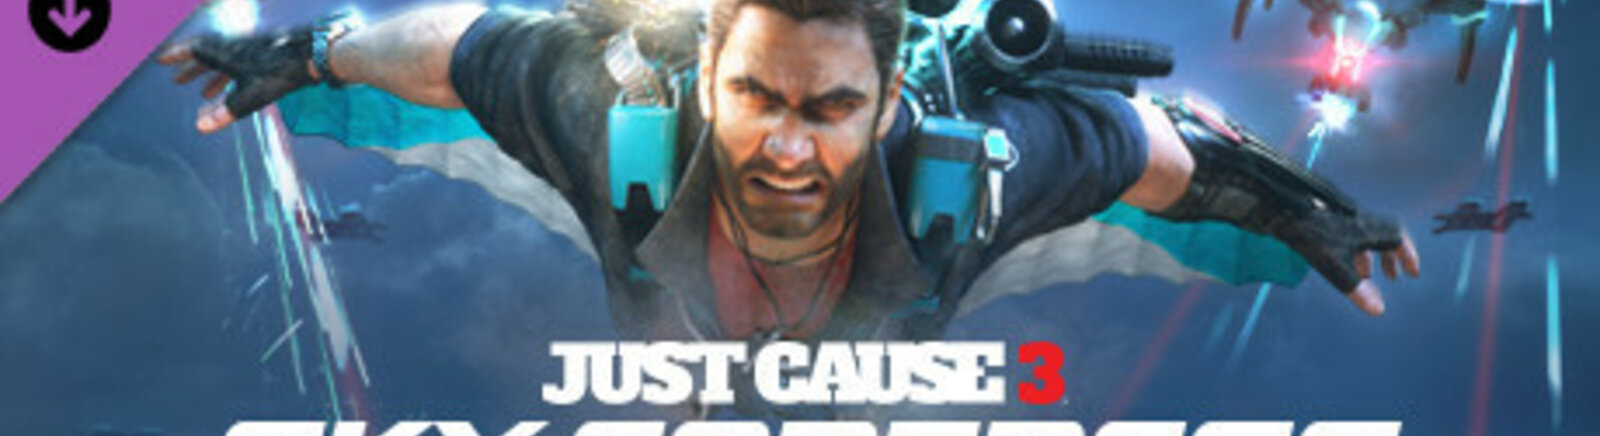 Дата выхода Just Cause 3: Sky Fortress  на PC, PS4 и Xbox One в России и во всем мире